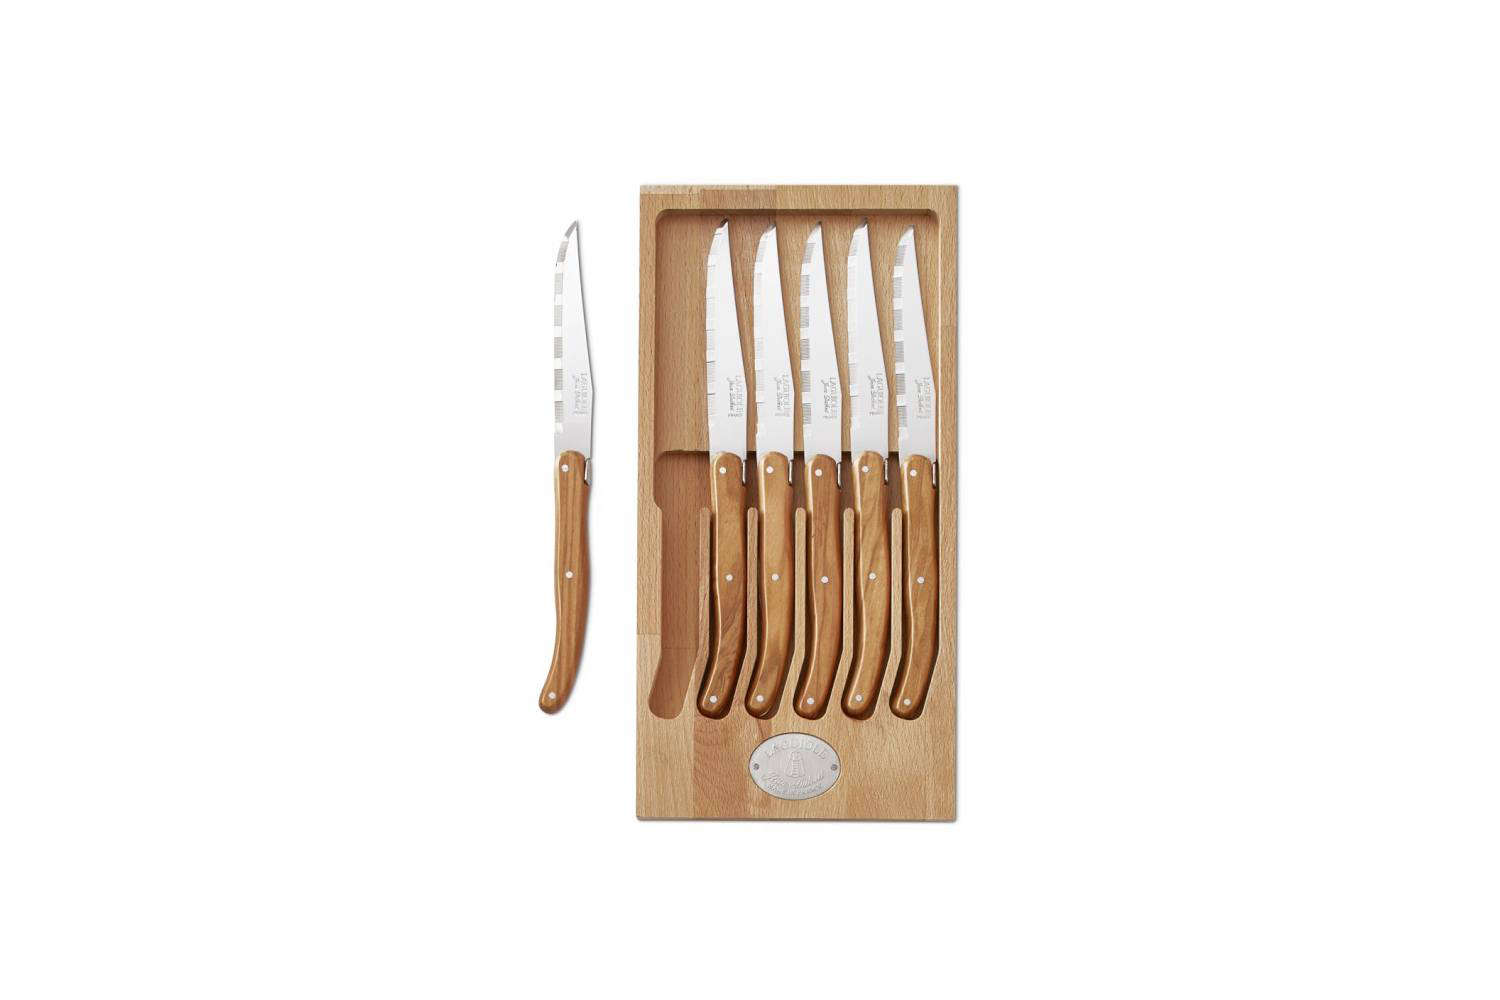 Laguiole Jean Dubost 6-Piece Steak Knife Block Set in Ivory White